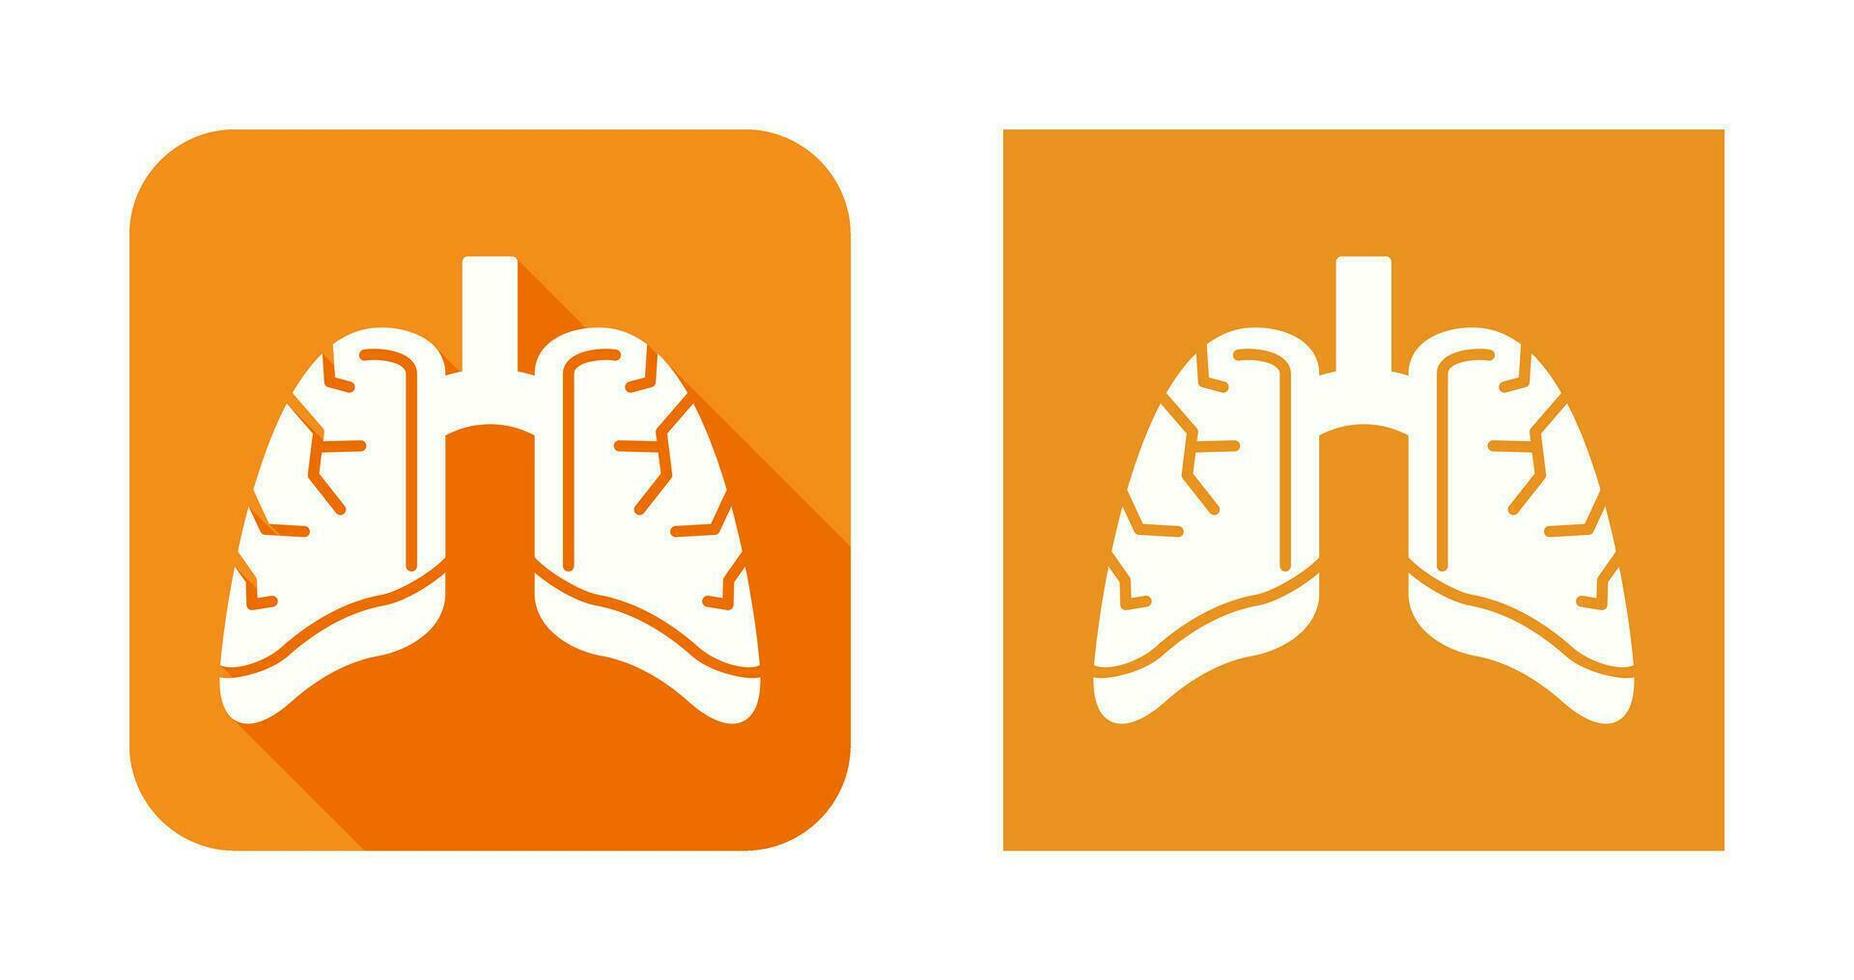 ícone de vetor de pulmões